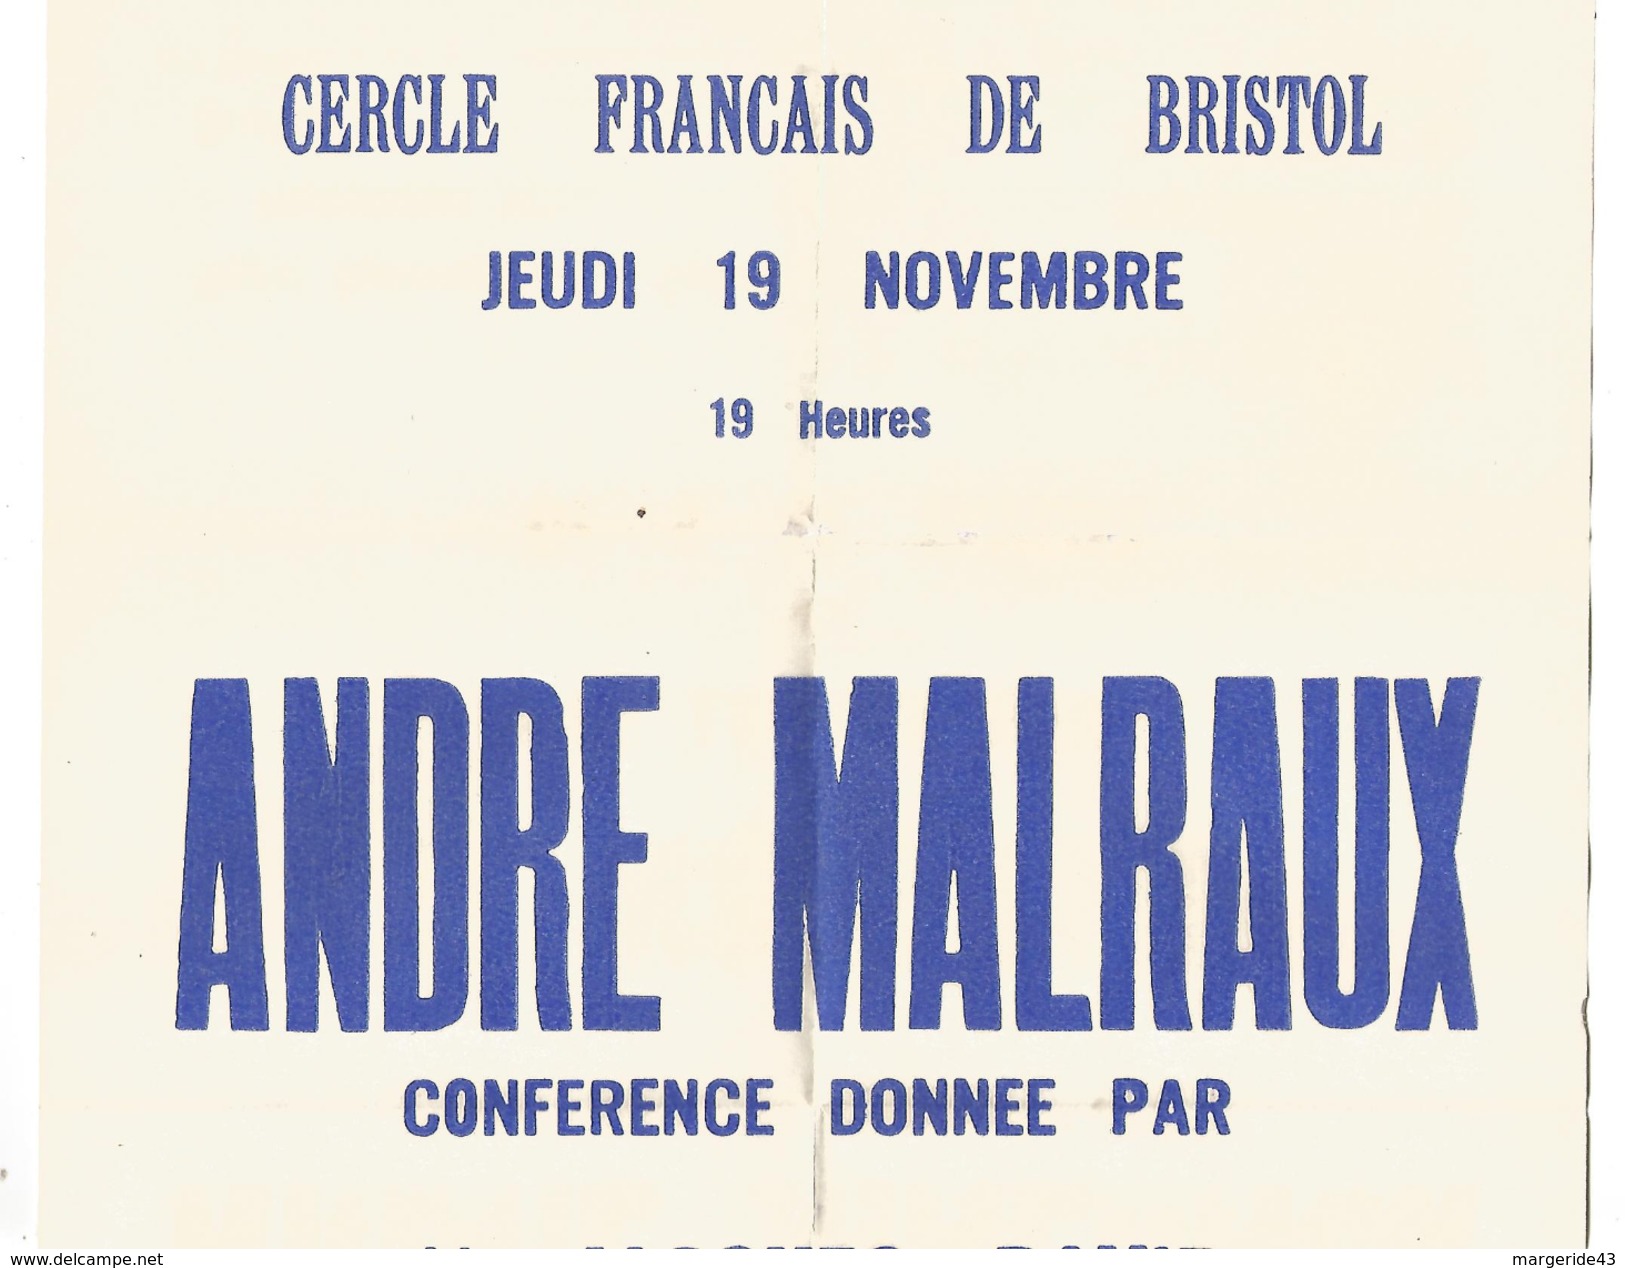 AFFICHE CONFERENCE SUR ANDRE MALRAUX A...BRISTOL ROYAUME UNI 1962 - Afiches